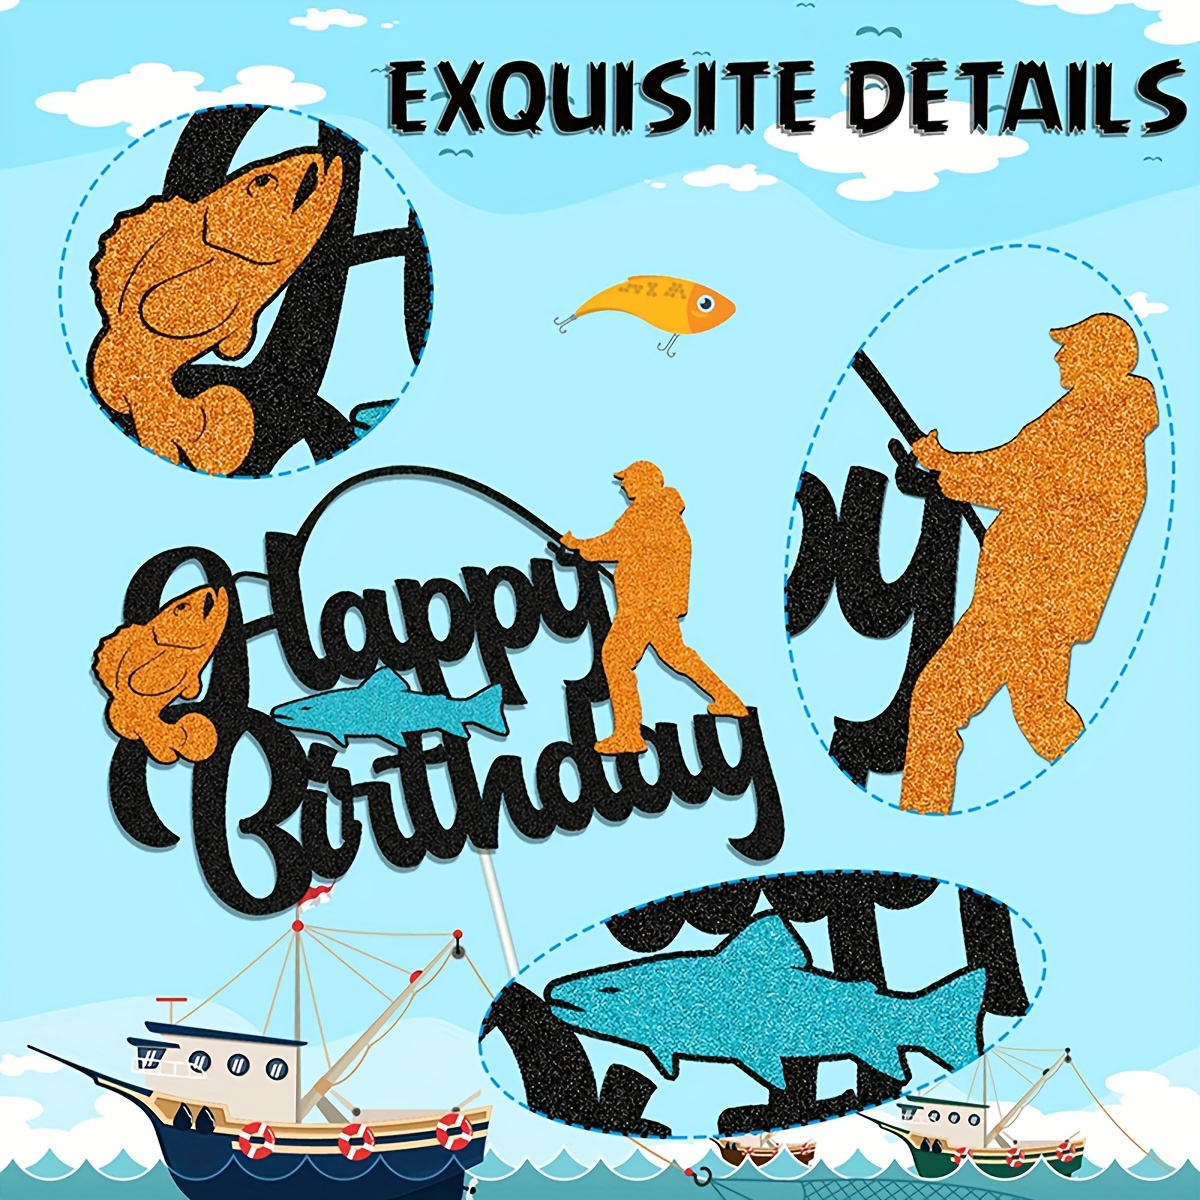 1pc, Fishing Theme Birthday Party Theme Decoration Cake Tag Fishing  Birthday Tag Birthday Party Decor Supplies